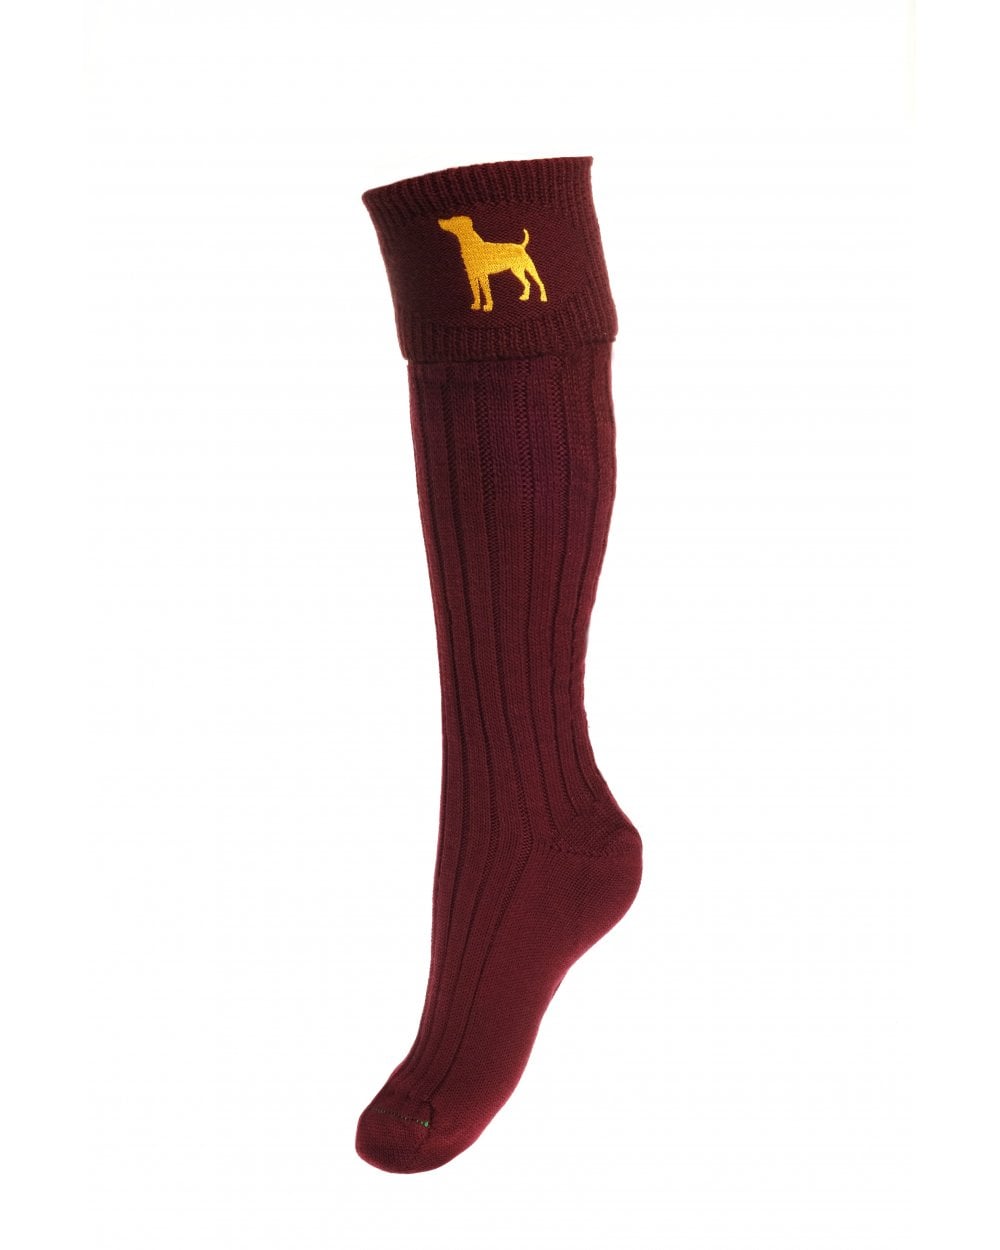 Lady Buckminster Socks - Burgundy - Terrier